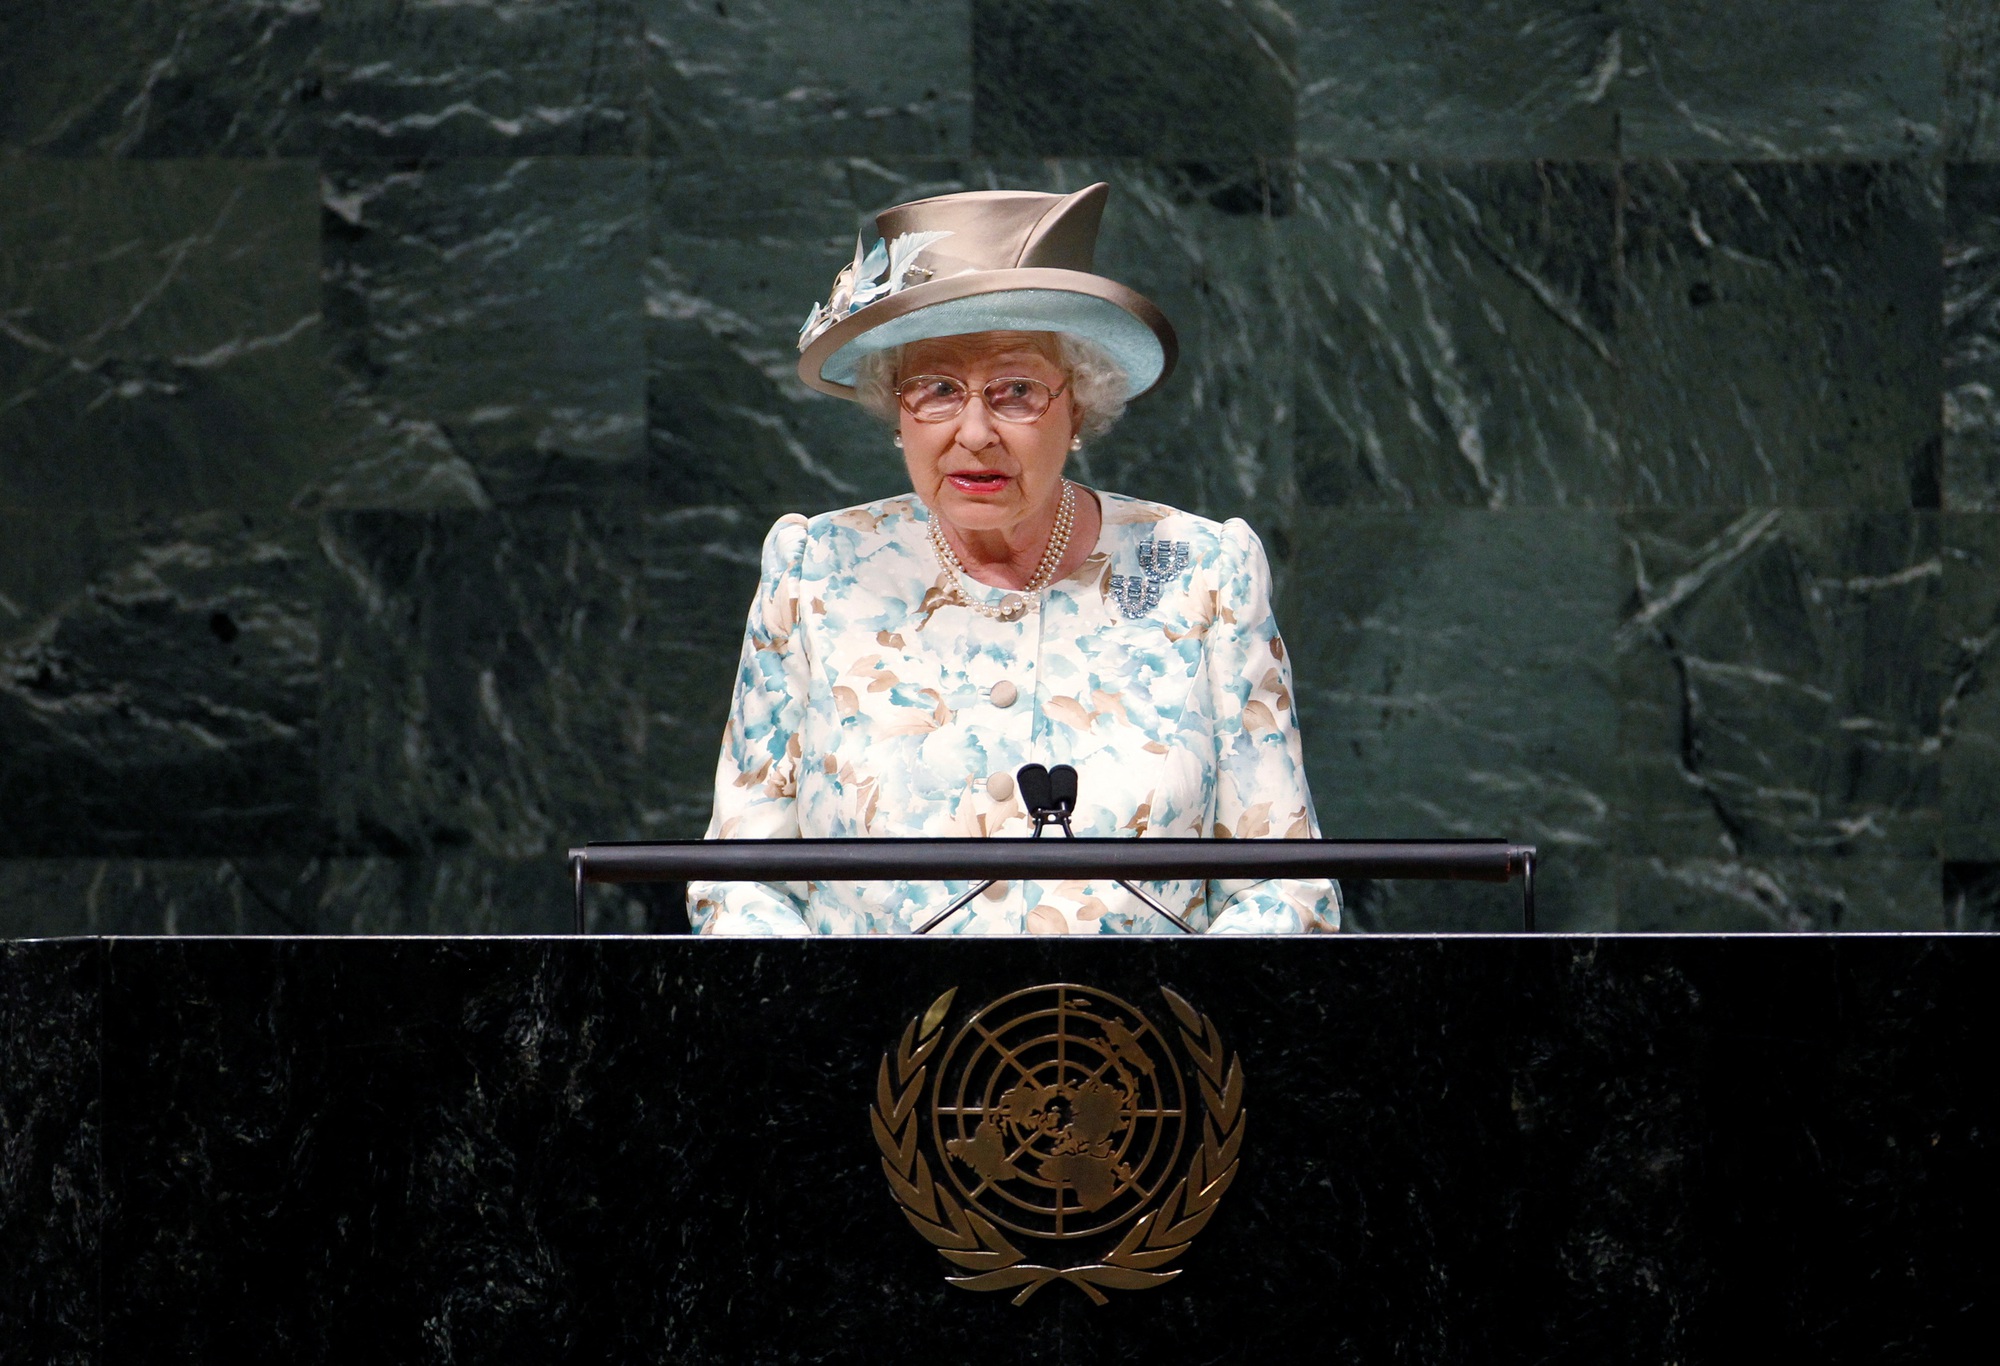 Nữ hoàng Elizabeth II và những kỷ lục thú vị - Ảnh 6.